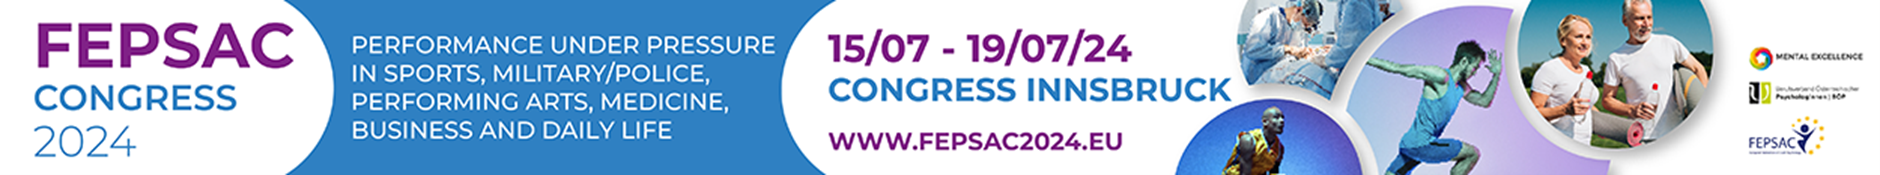 Event-FEPSAC2024